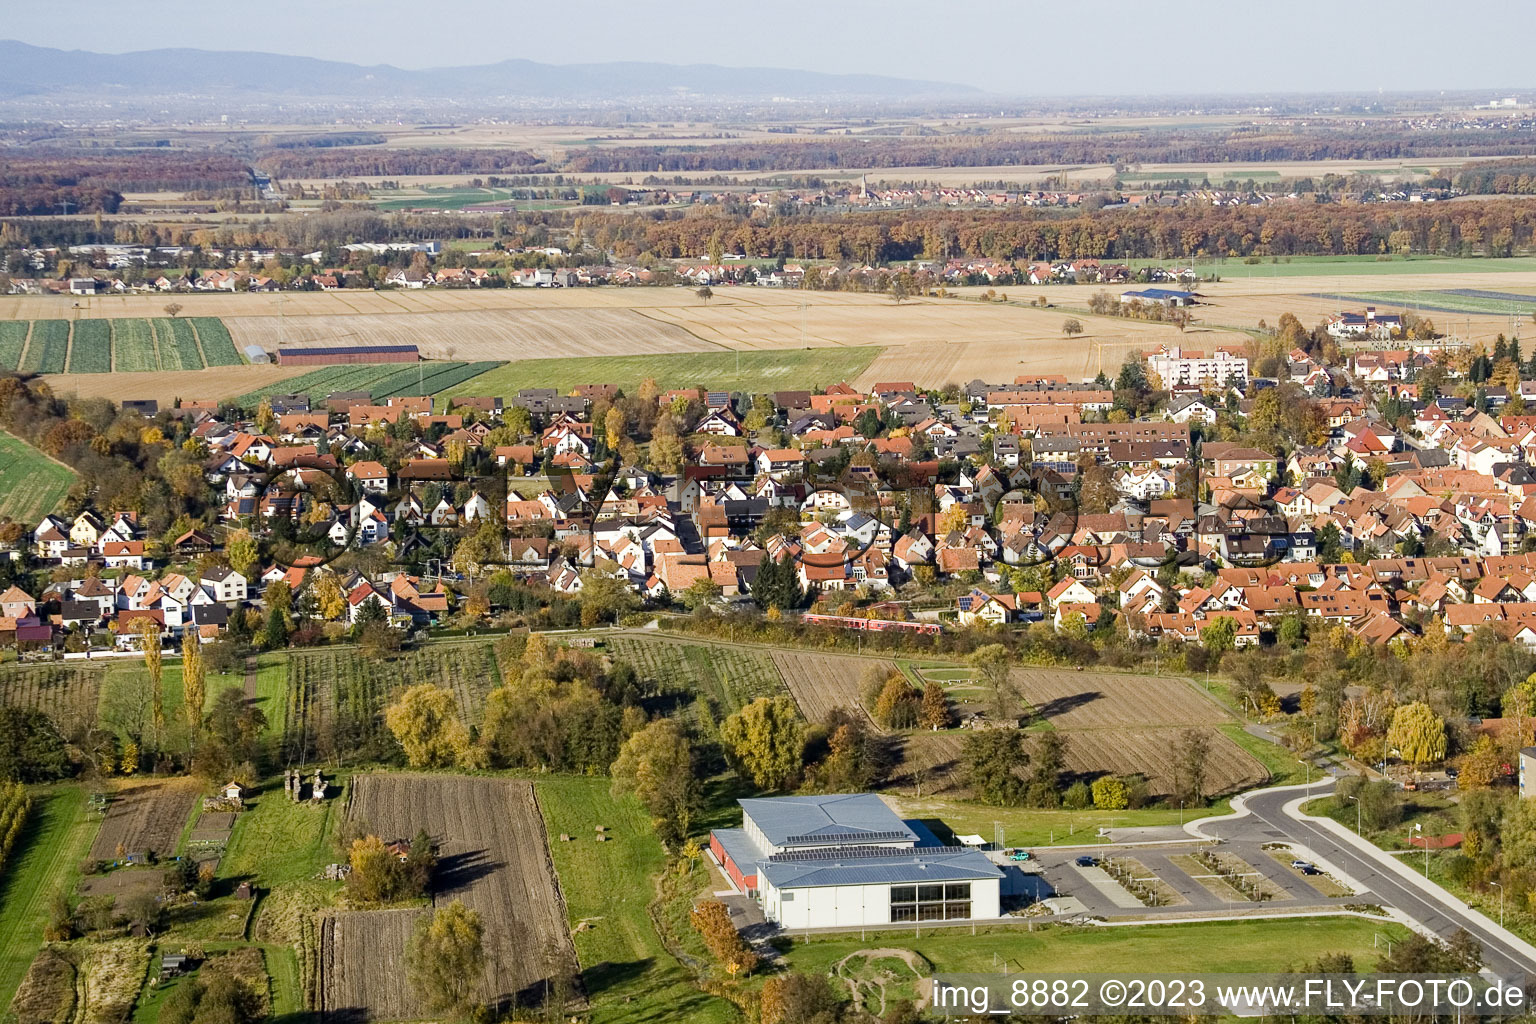 Bienwaldhalle à Kandel dans le département Rhénanie-Palatinat, Allemagne hors des airs